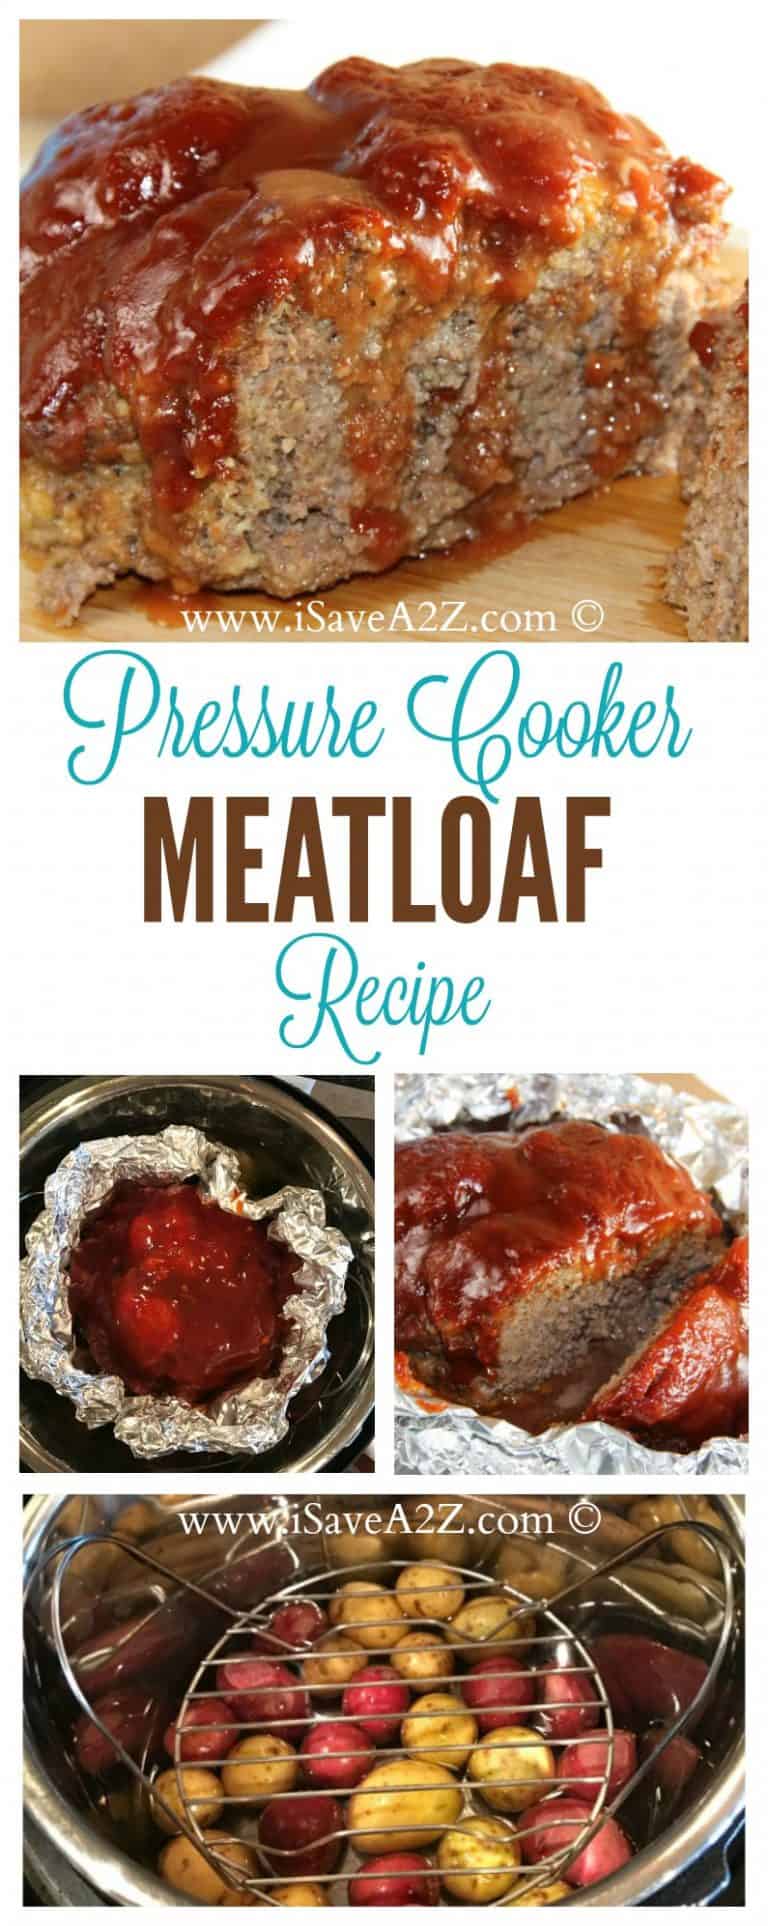 Pressure Cooker Meatloaf Recipe - iSaveA2Z.com